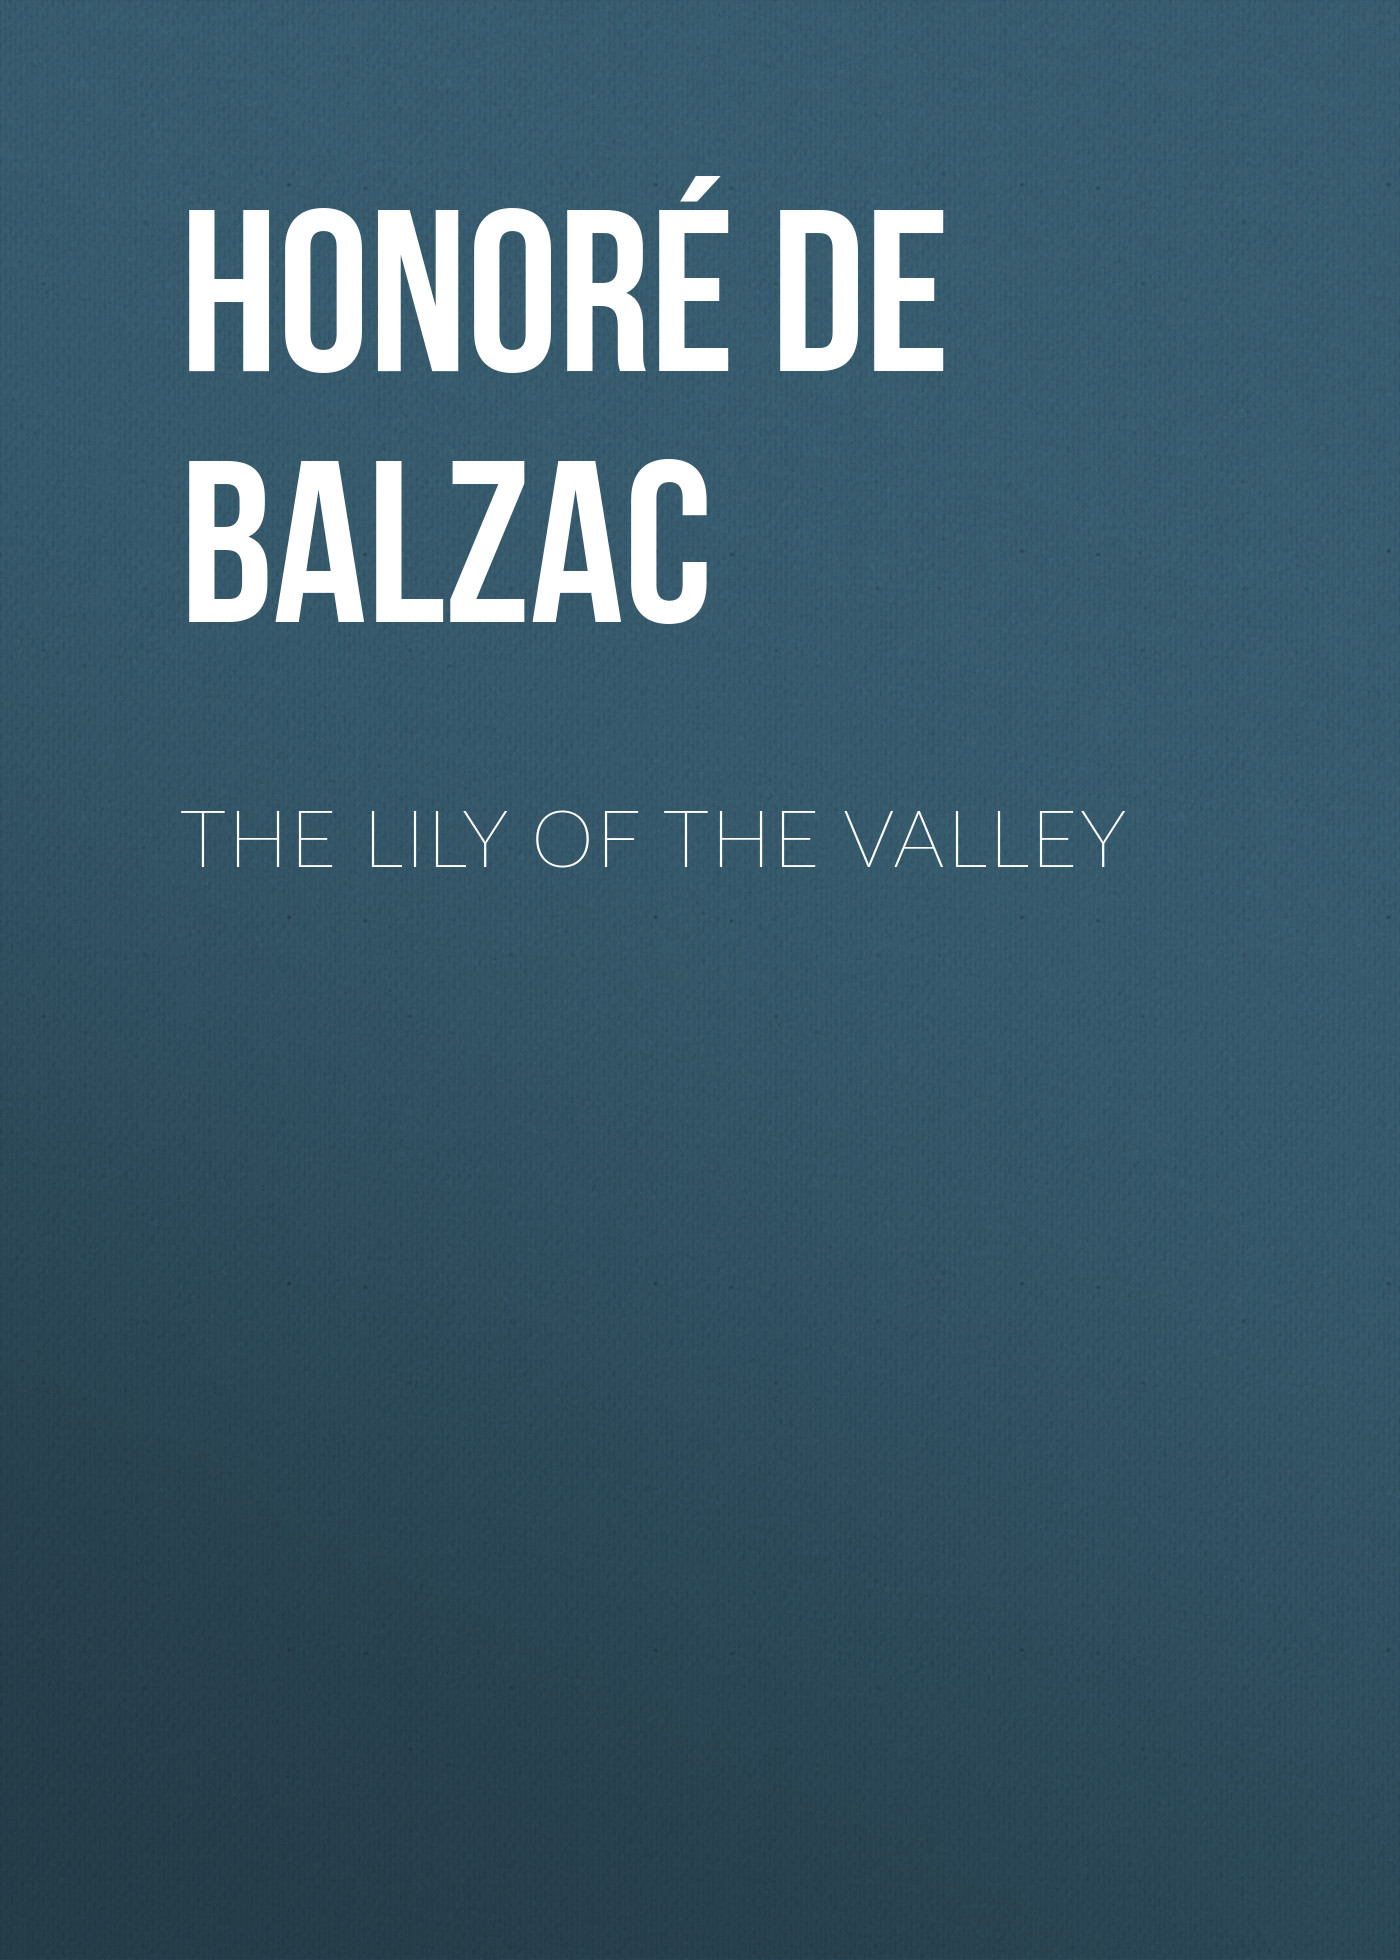 Книга The Lily of the Valley из серии , созданная Honoré Balzac, может относится к жанру Литература 19 века, Зарубежная старинная литература, Зарубежная классика. Стоимость электронной книги The Lily of the Valley с идентификатором 25020003 составляет 0 руб.